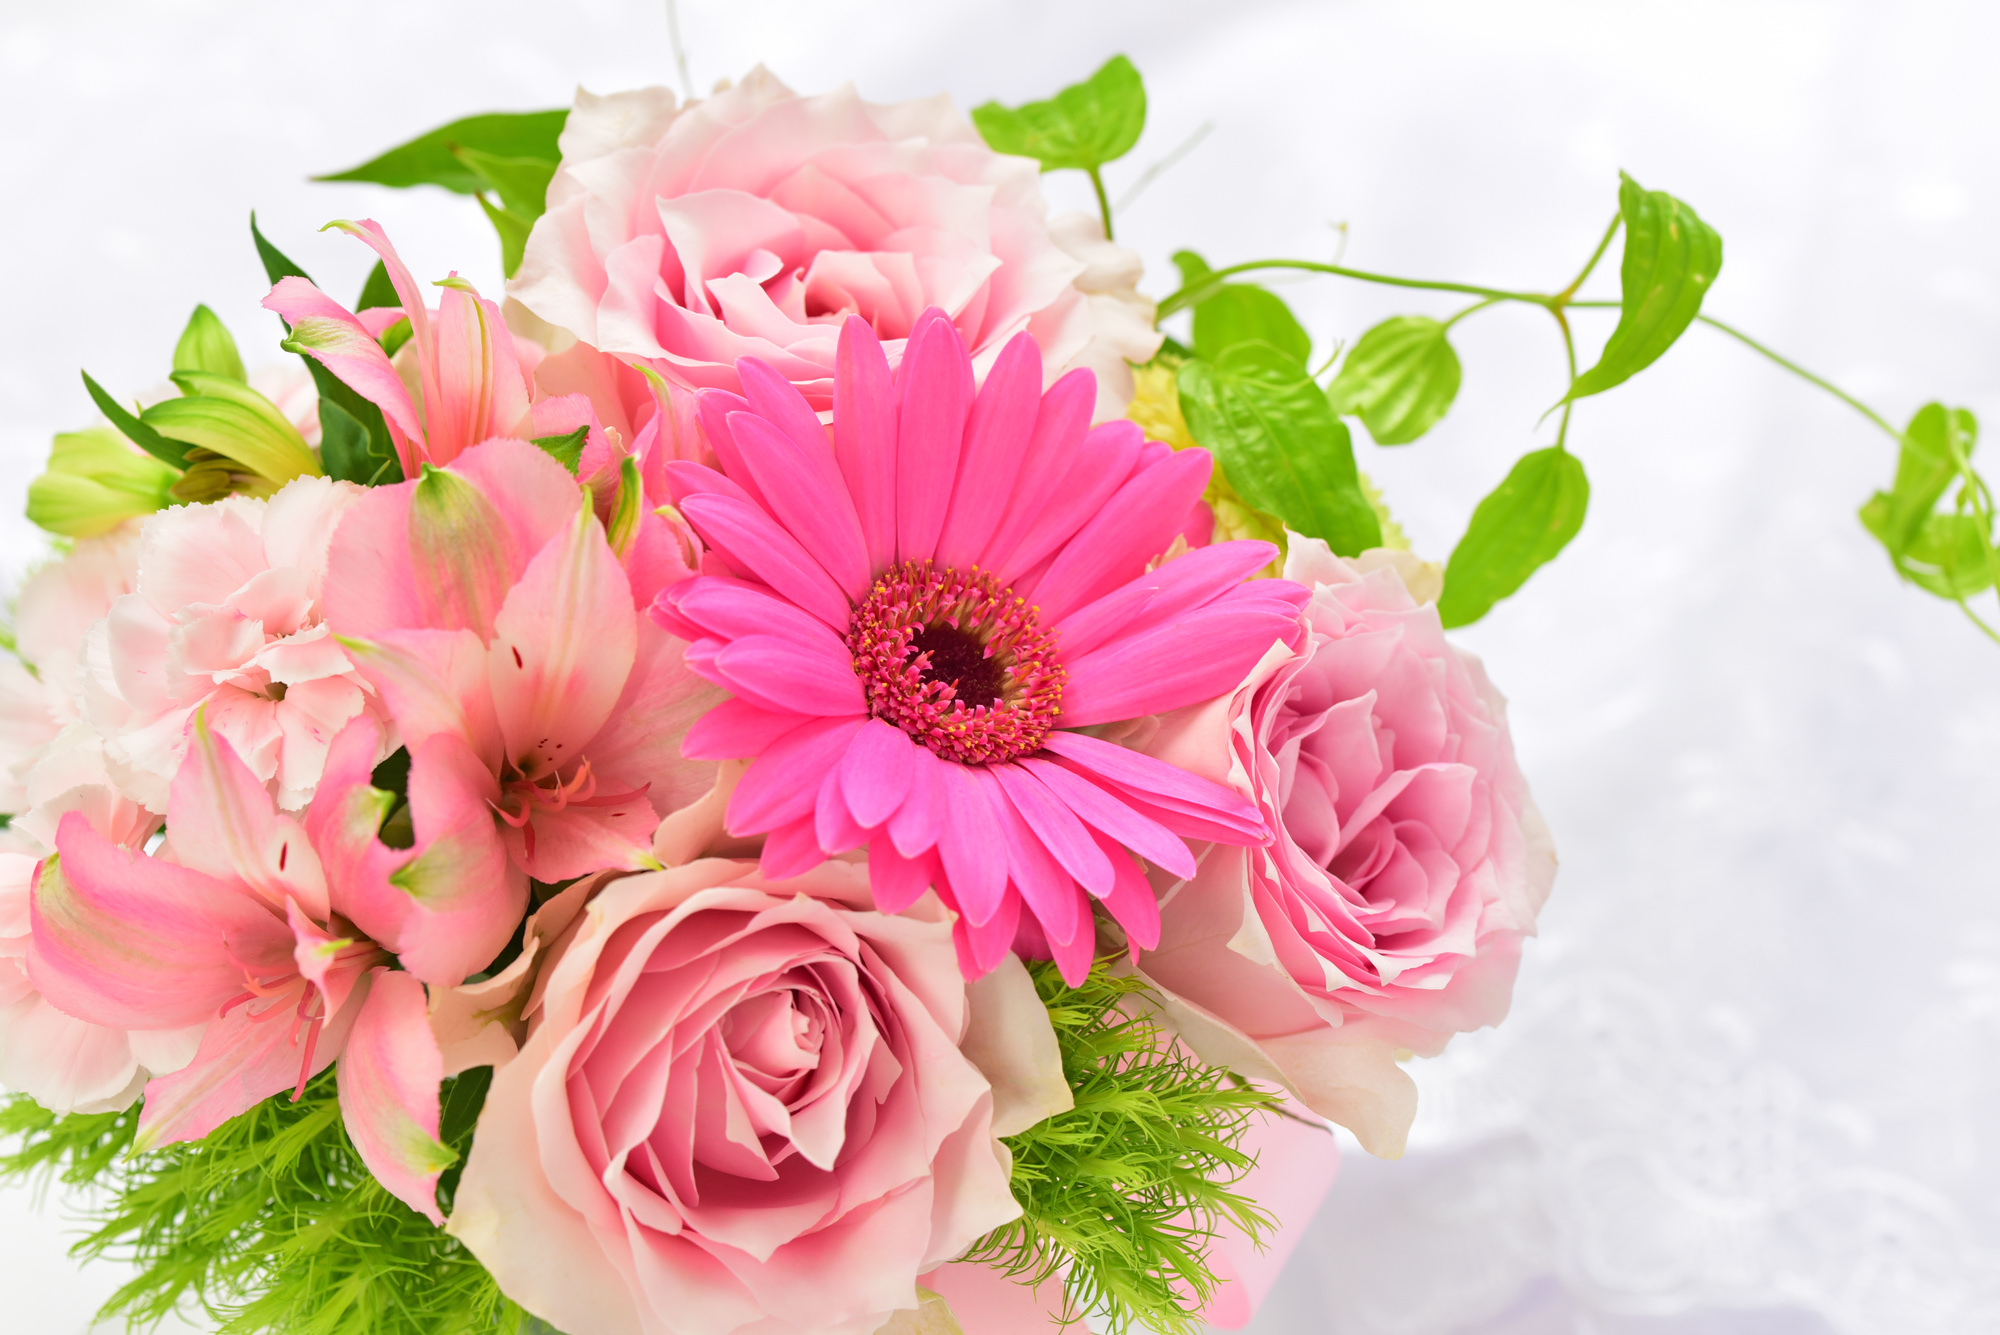 誕生日ギフト特集 花や花束の宅配 フラワーギフト通販なら花キューピット 贈り物 プレゼントで花を贈ろう